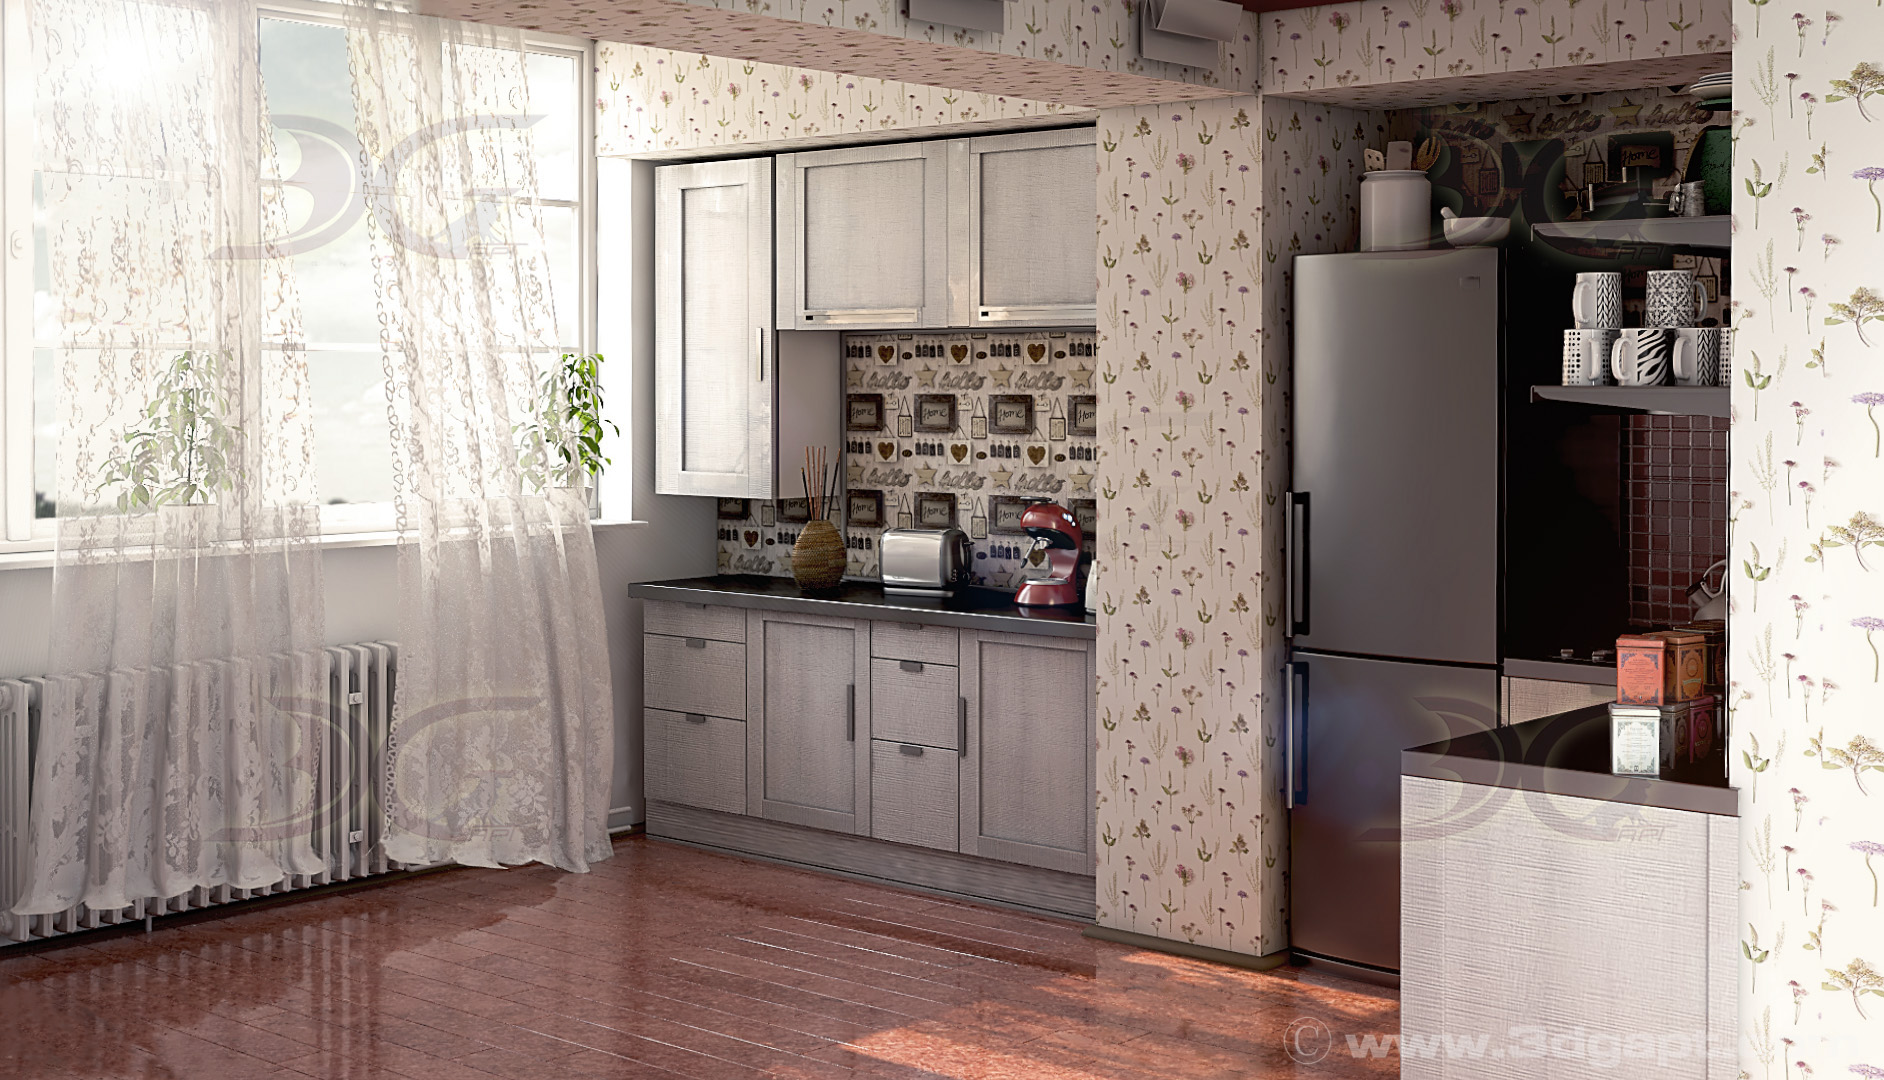 architecture interior kitchen-2versions 002